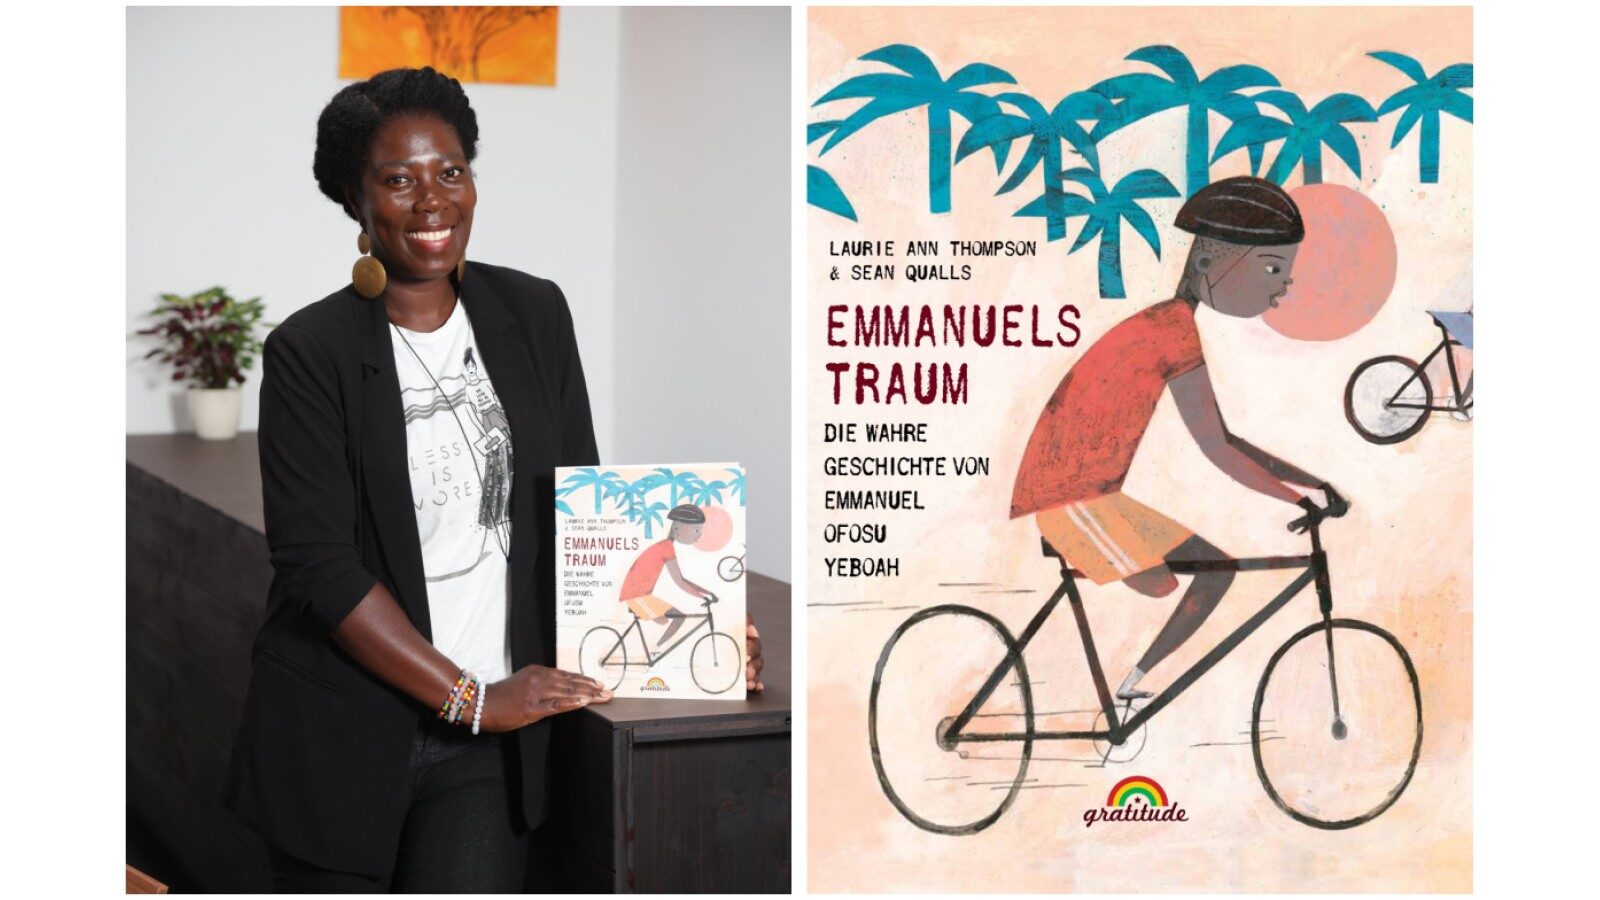 Emmanuels Traum: Die wahre Geschichte von Emmanuel Ofosu Yeboah – aus dem Verlag von Dayan Kodua